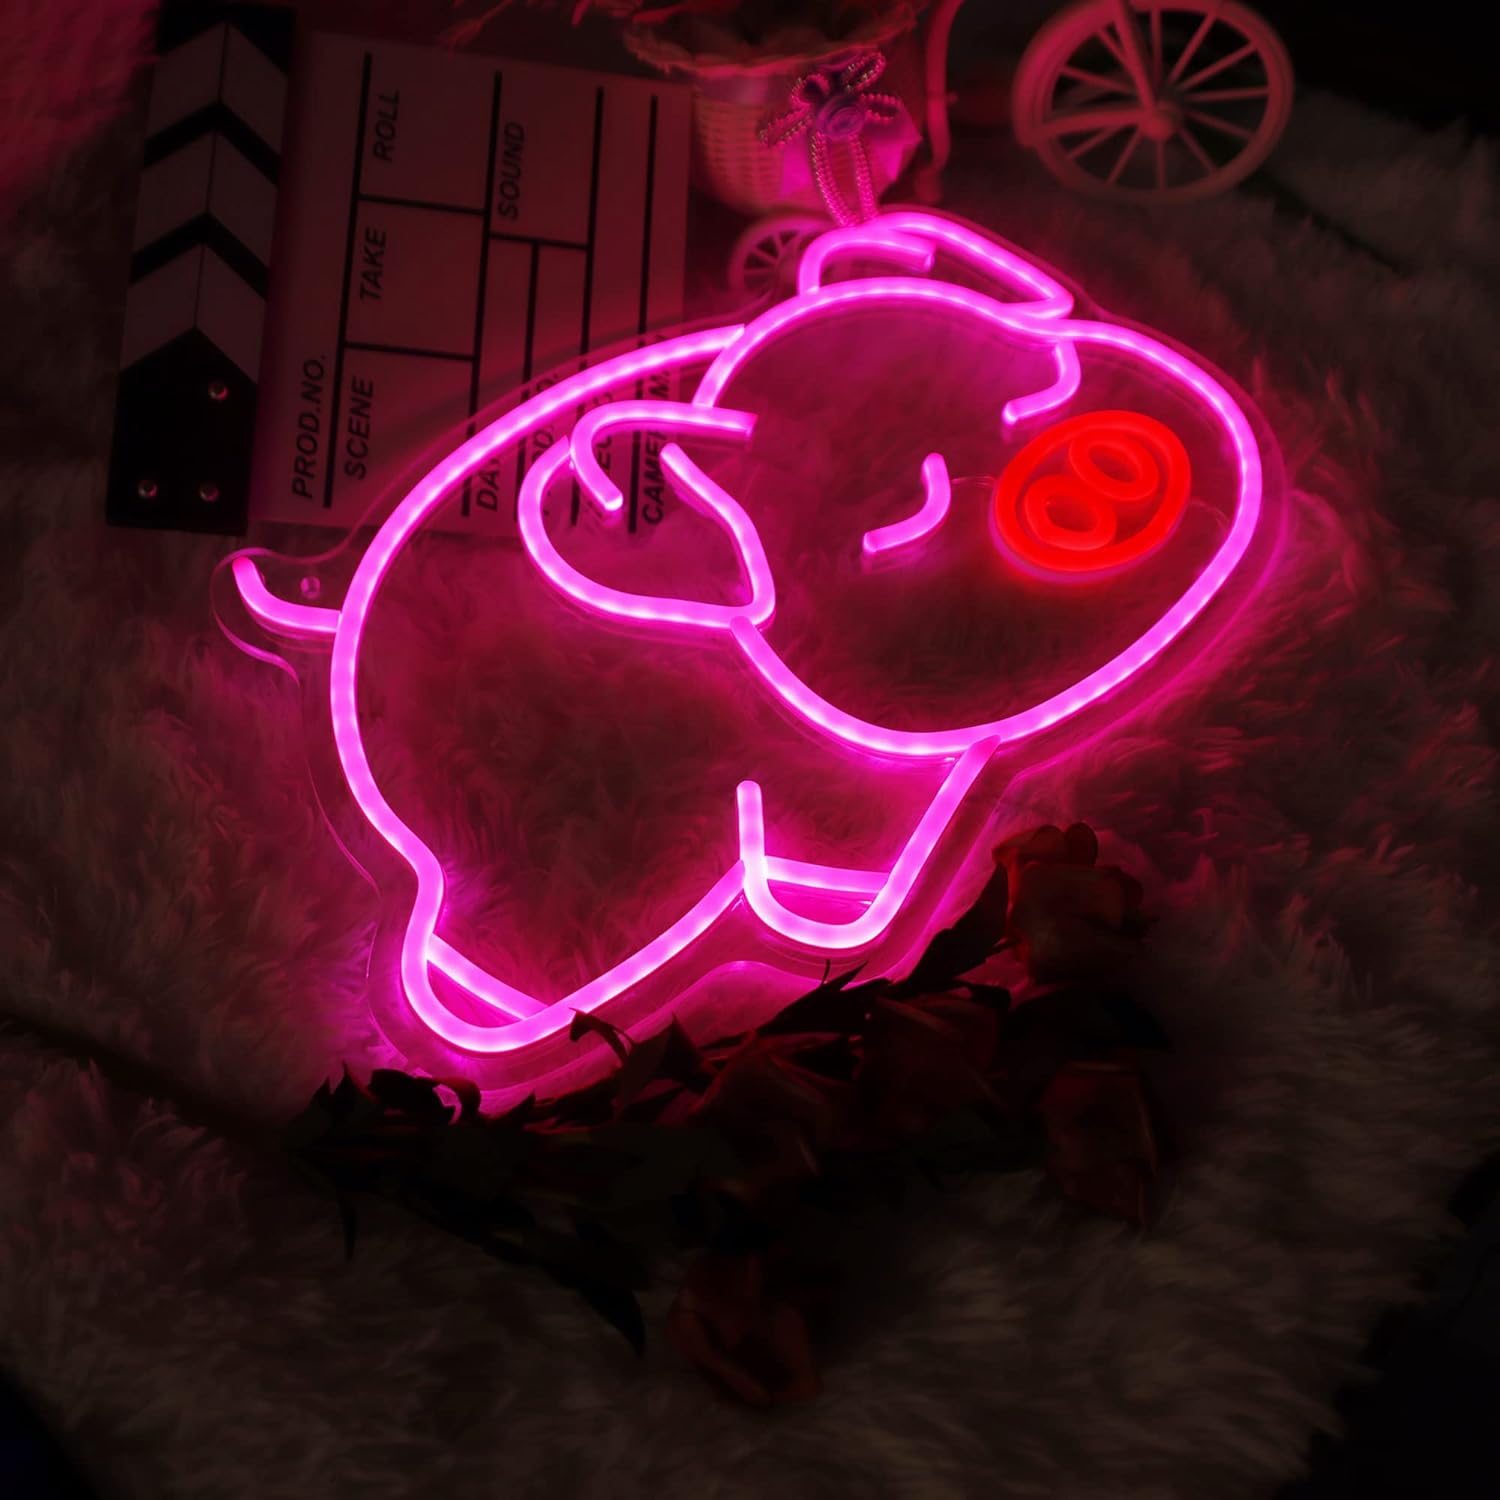 ネオンサイン 「豚」 壁掛け NEON SIGN USB給電 ネオン管 ピンクの豚 広告用 看板 壁の装飾用 ディスプレイ 居酒屋 カフェ 喫茶店 インテリア ホームデコレーション ギフト 娯楽場 省エネ 室内装飾 プレゼント クラブ バー クラブ ゲームセンターインテリア